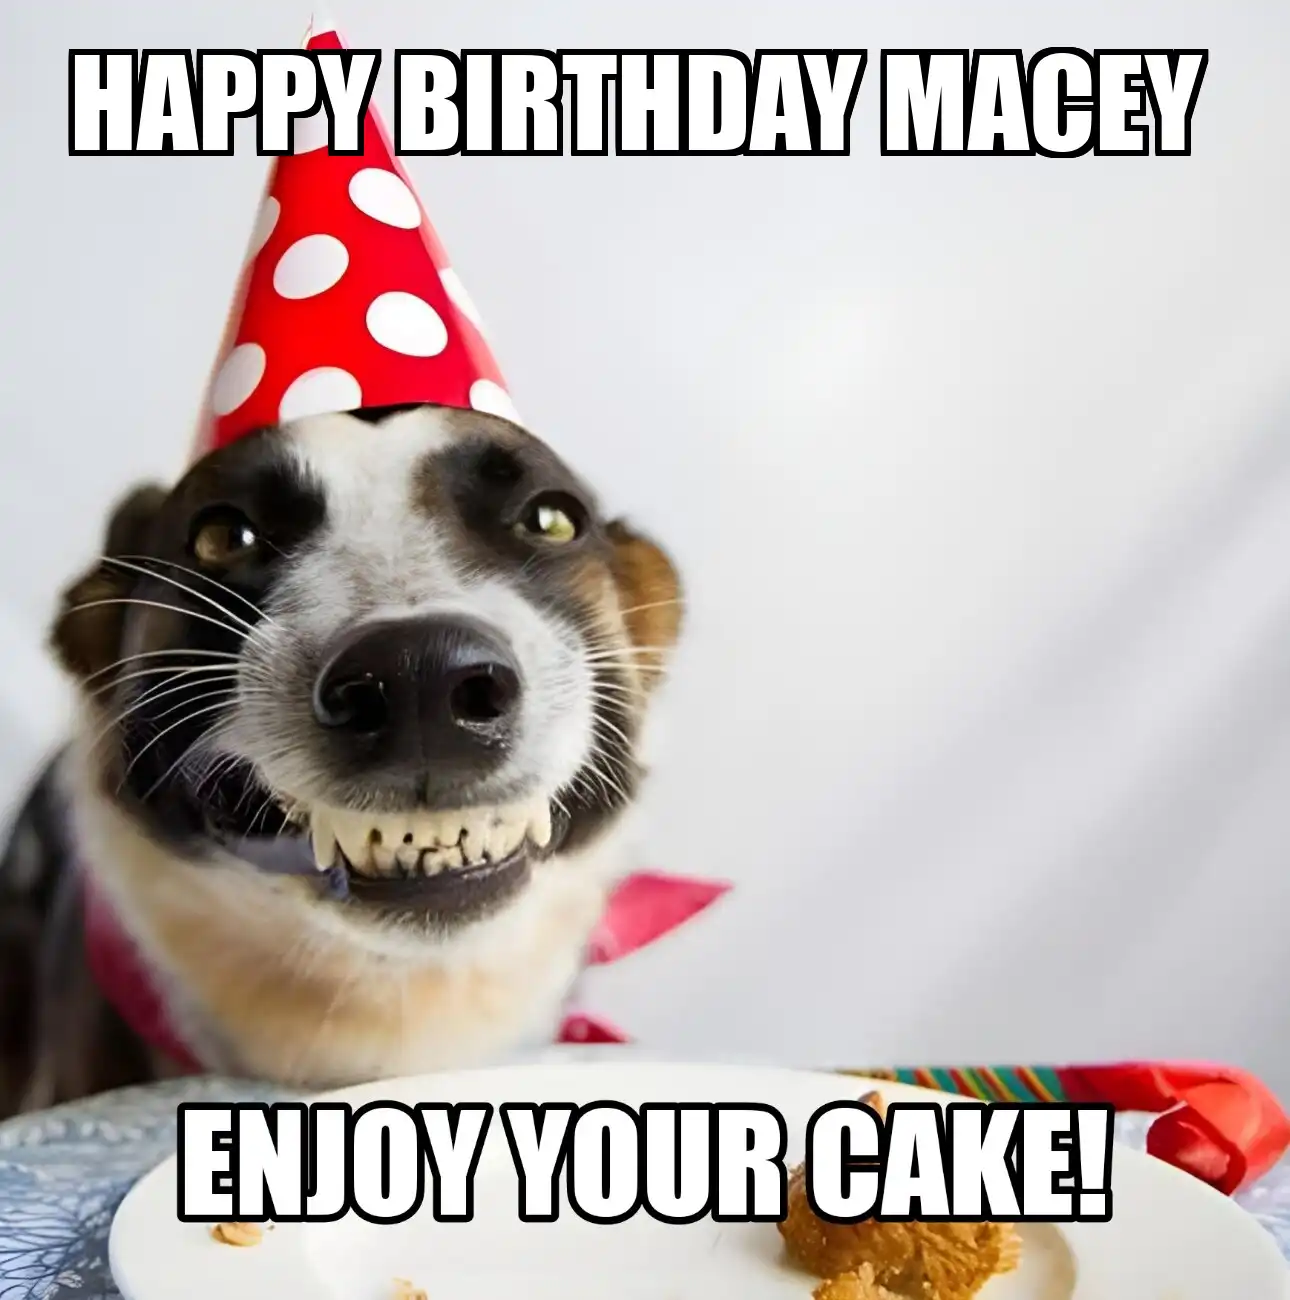 Happy Birthday Macey Enjoy Your Cake Dog Meme